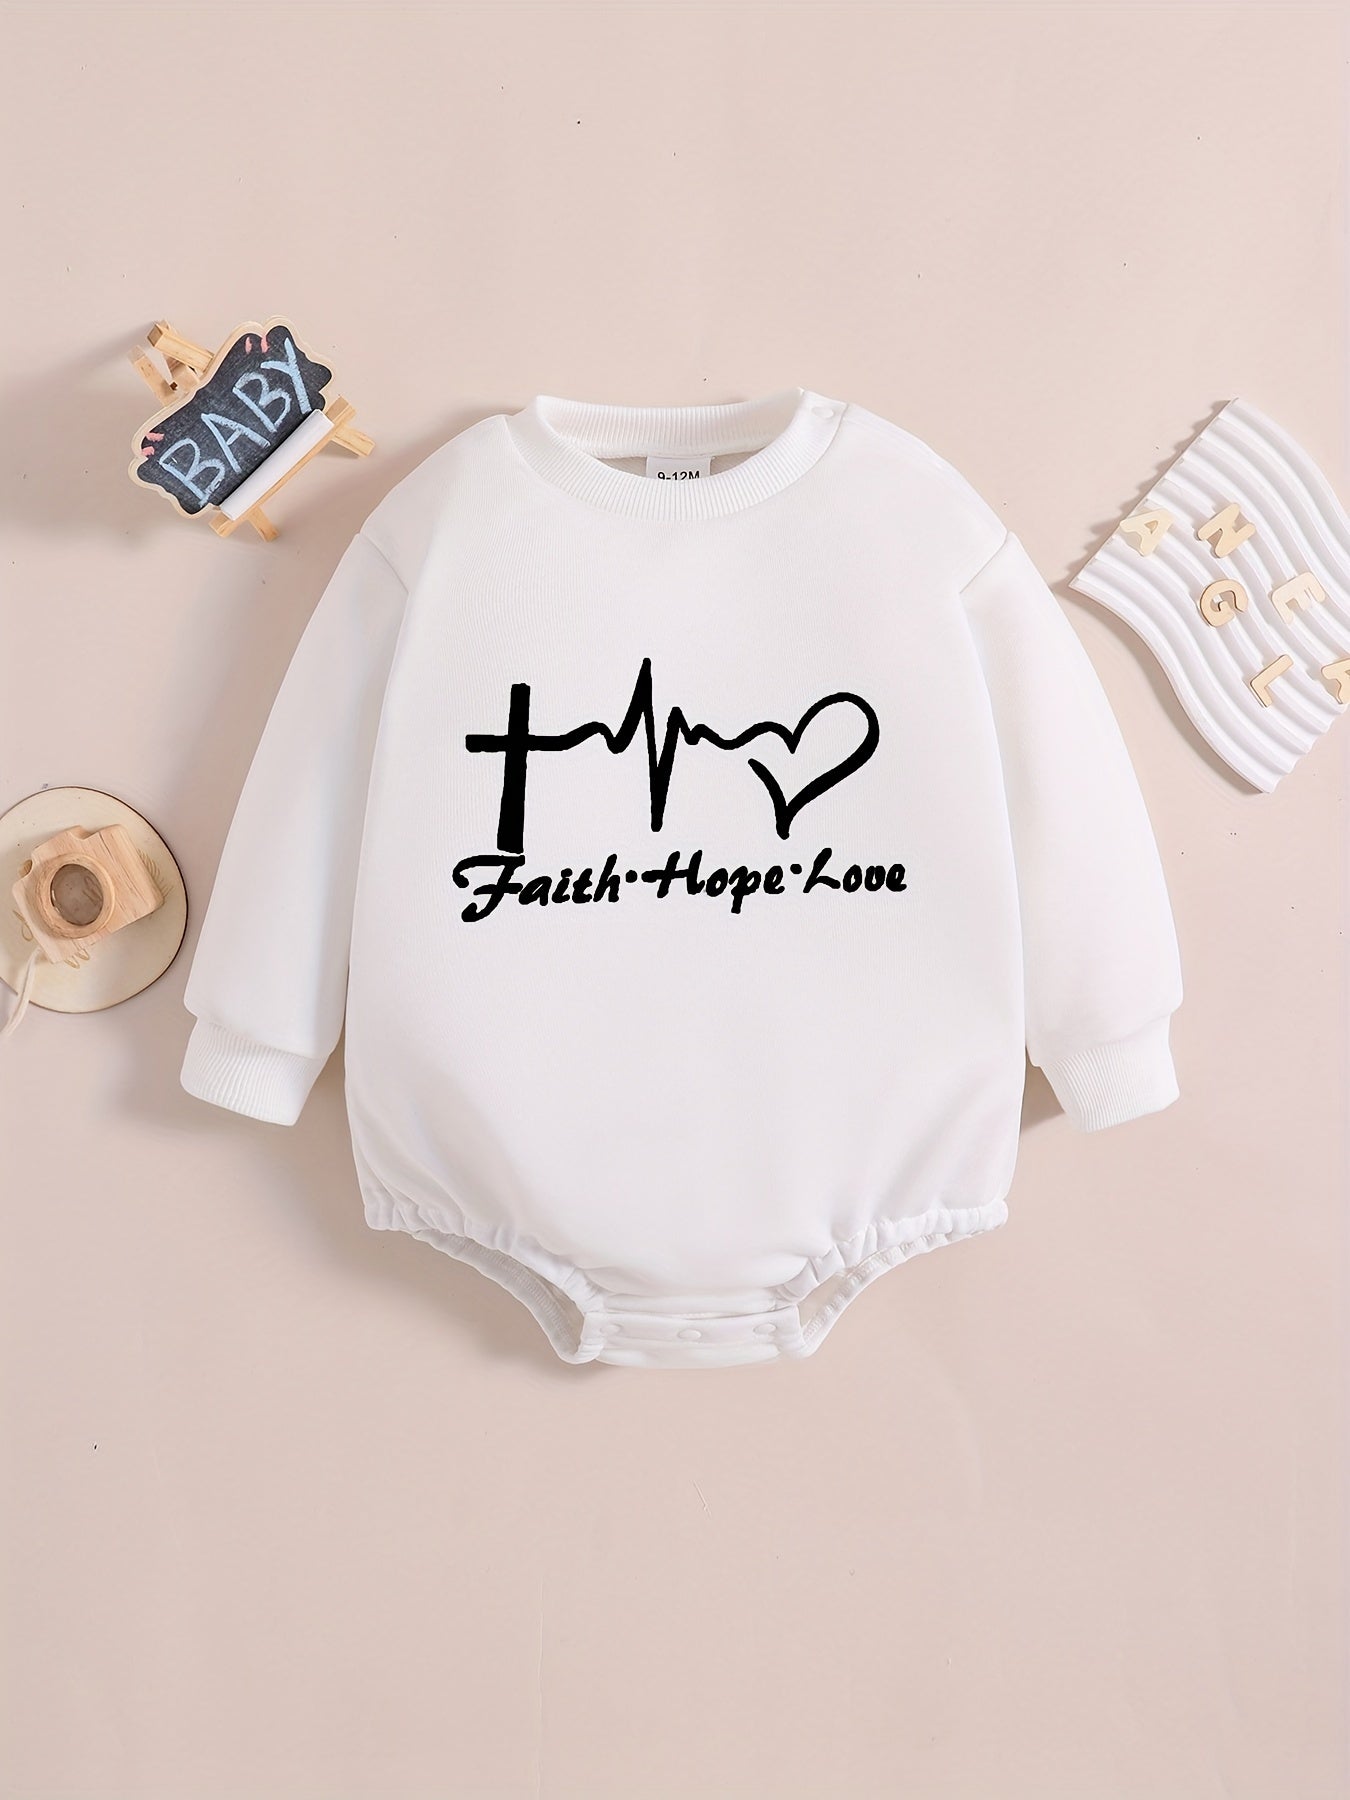 FAITH & HOPE & LOVE Long Sleeve Christian Baby Onesie claimedbygoddesigns